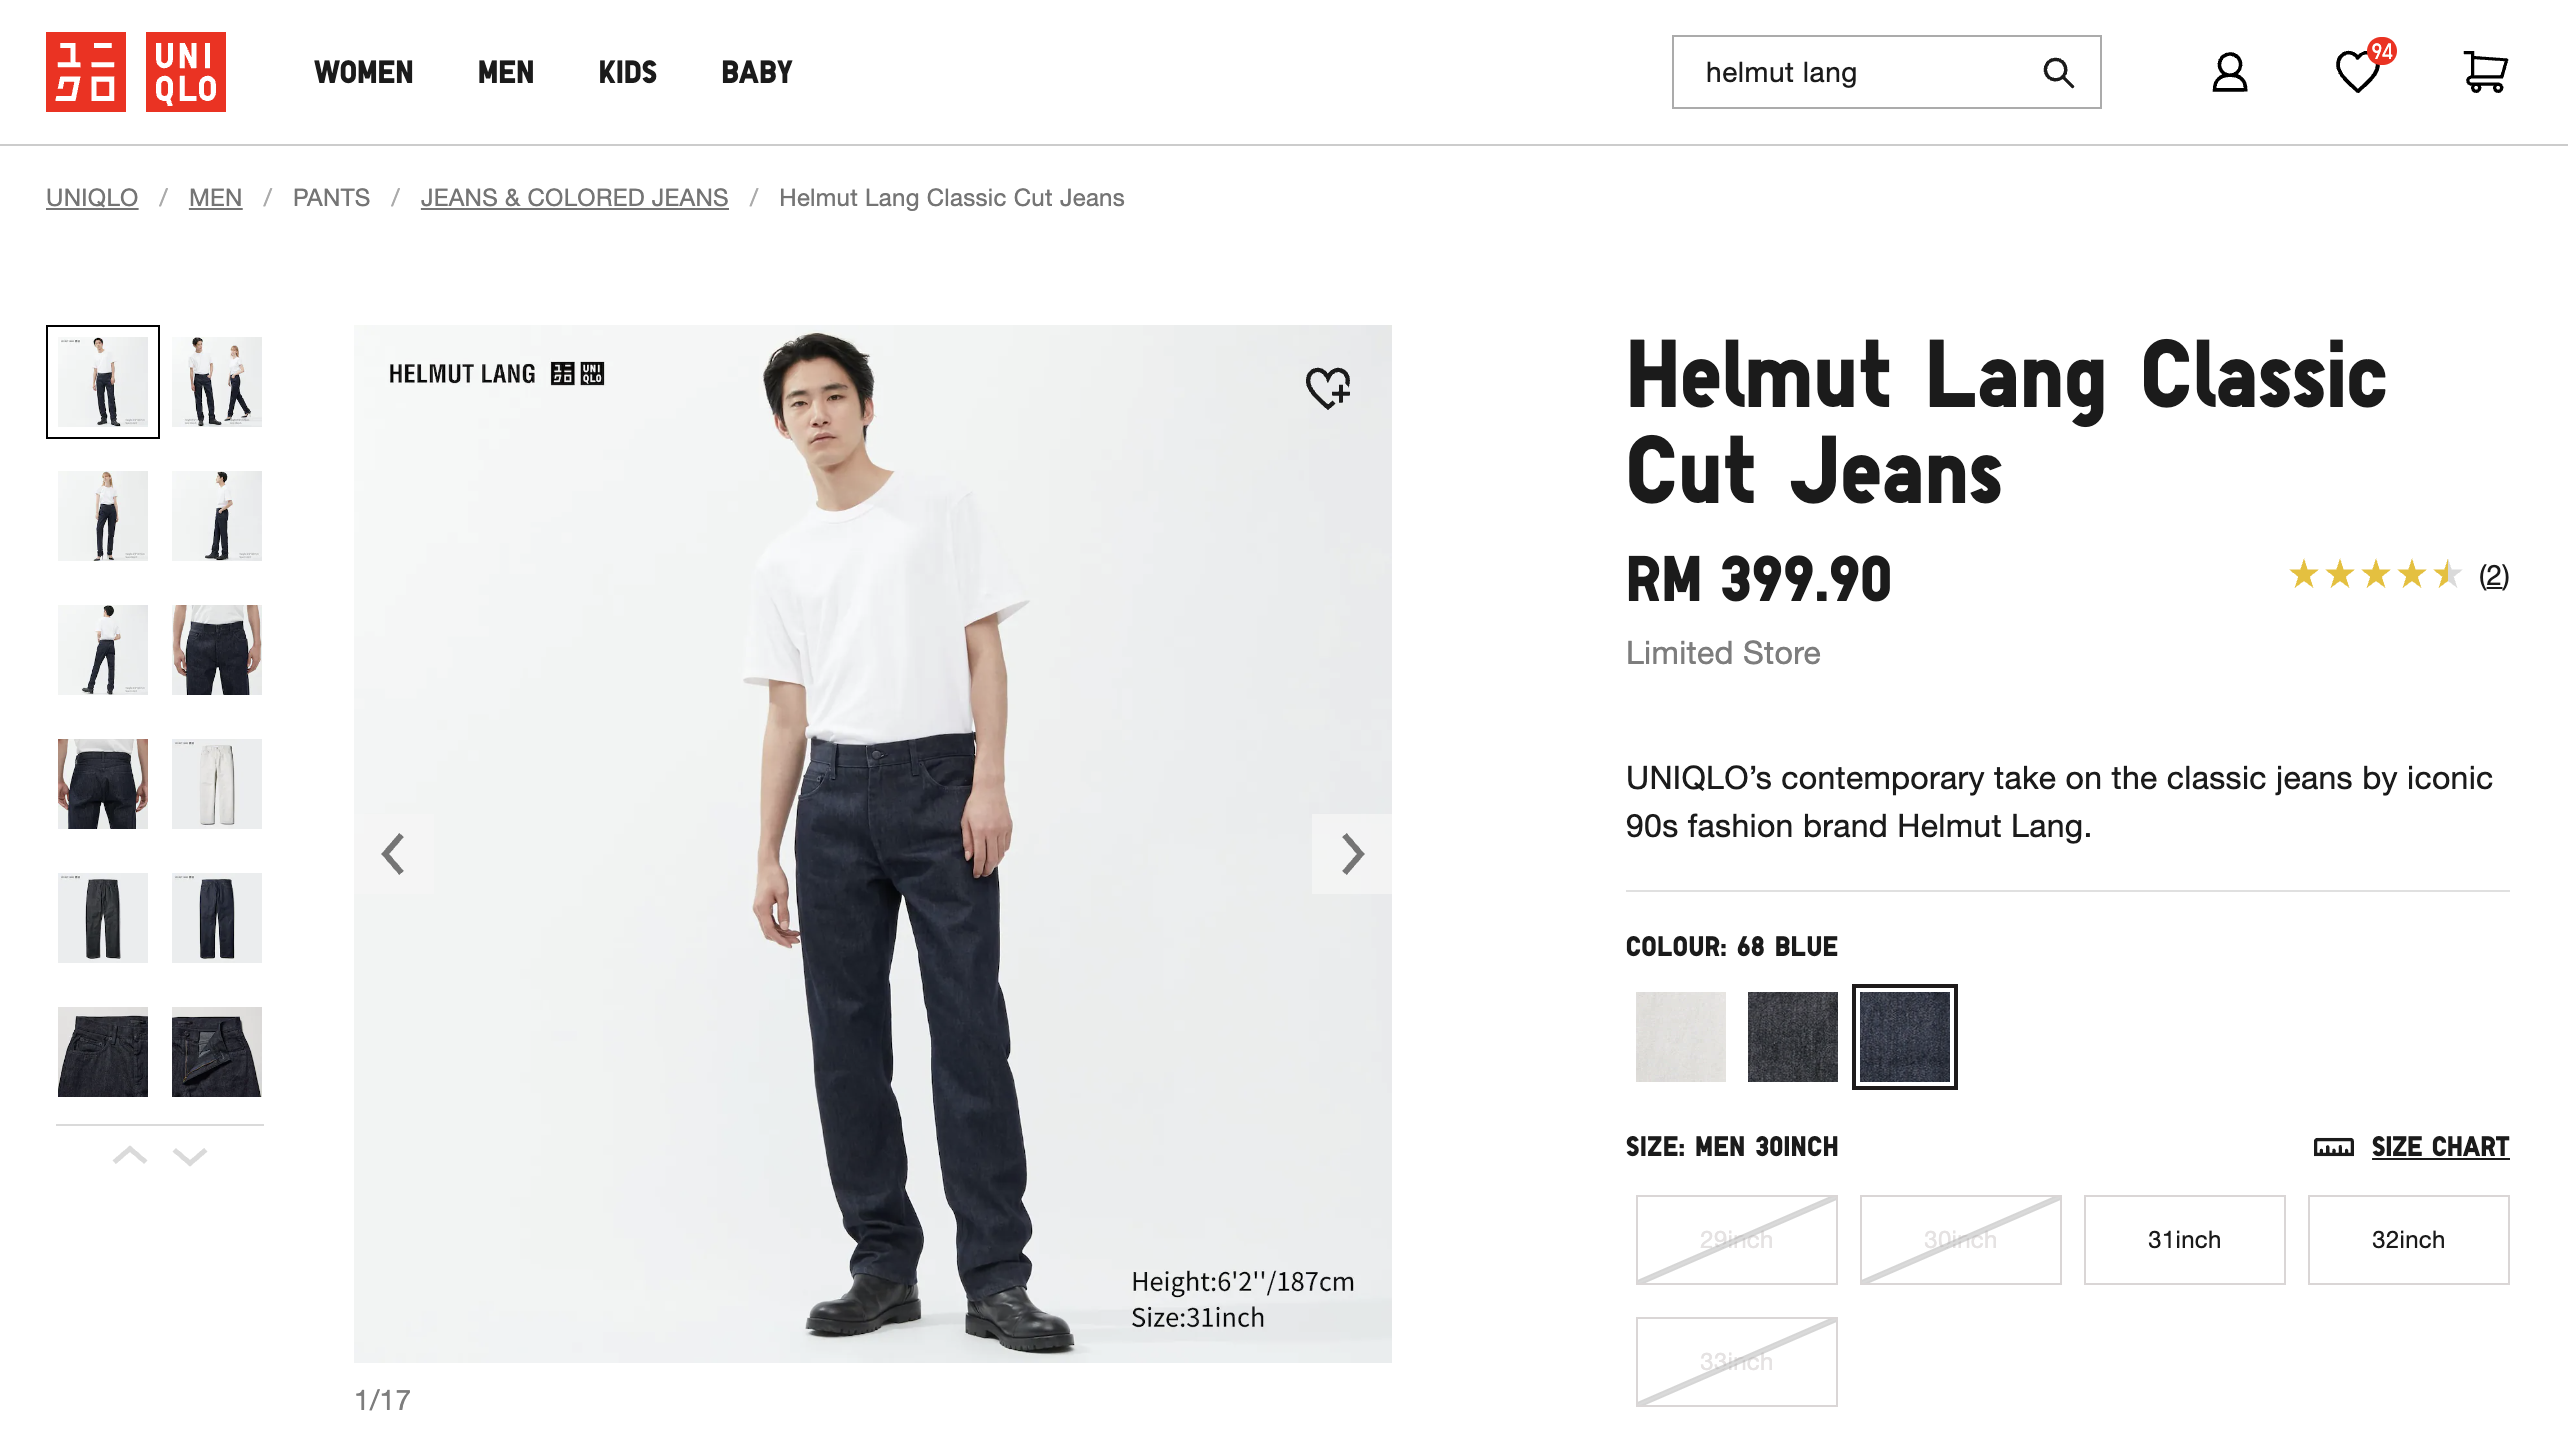 Aktualisieren mehr als 59 helmut lang classic cut jeans - tienganhchobe ...